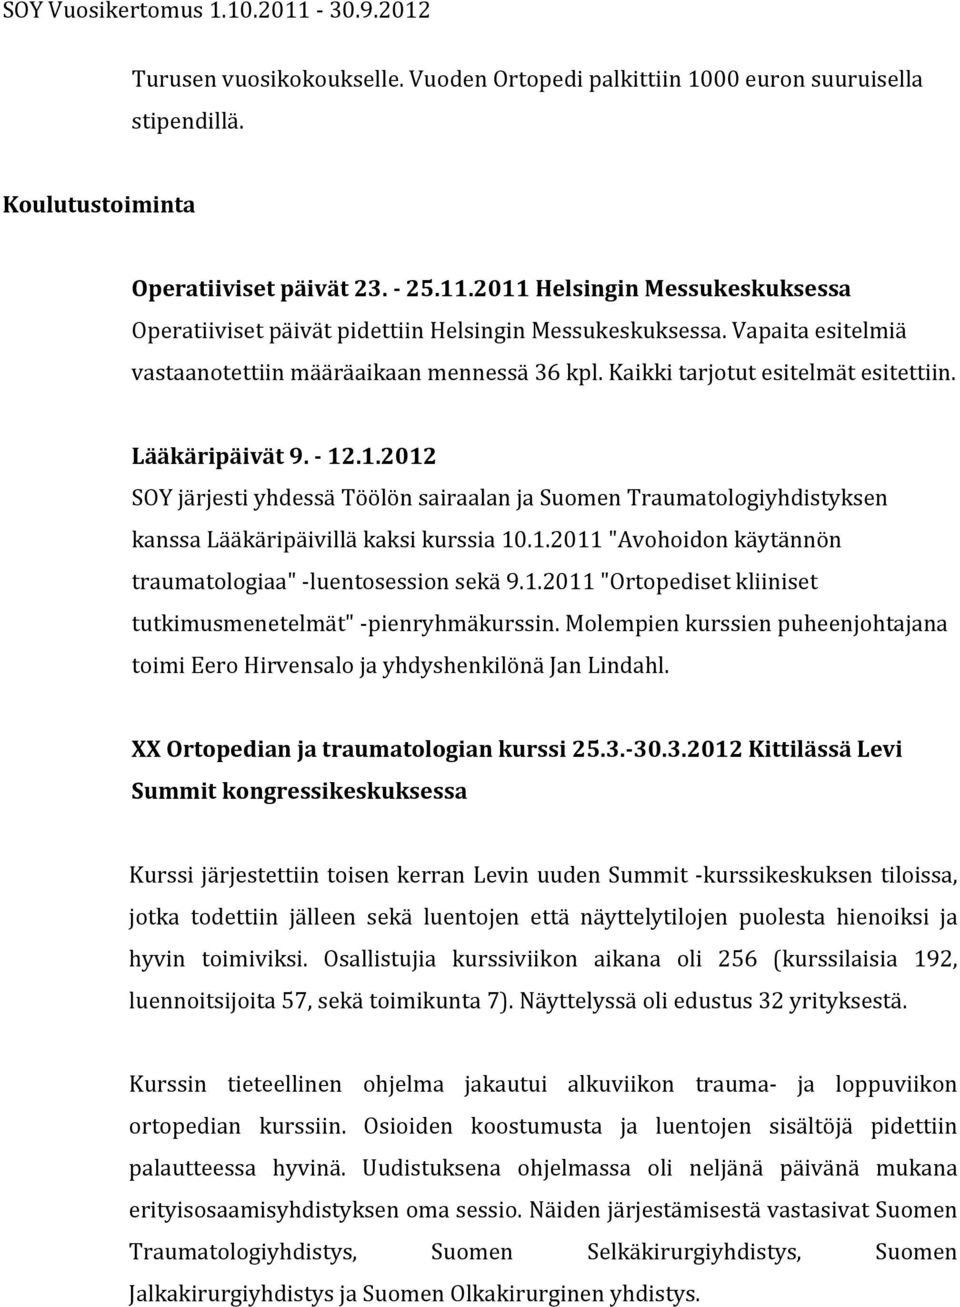 Lääkäripäivät 9. - 12.1.2012 SOY järjesti yhdessä Töölön sairaalan ja Suomen Traumatologiyhdistyksen kanssa Lääkäripäivillä kaksi kurssia 10.1.2011 "Avohoidon käytännön traumatologiaa" - luentosession sekä 9.